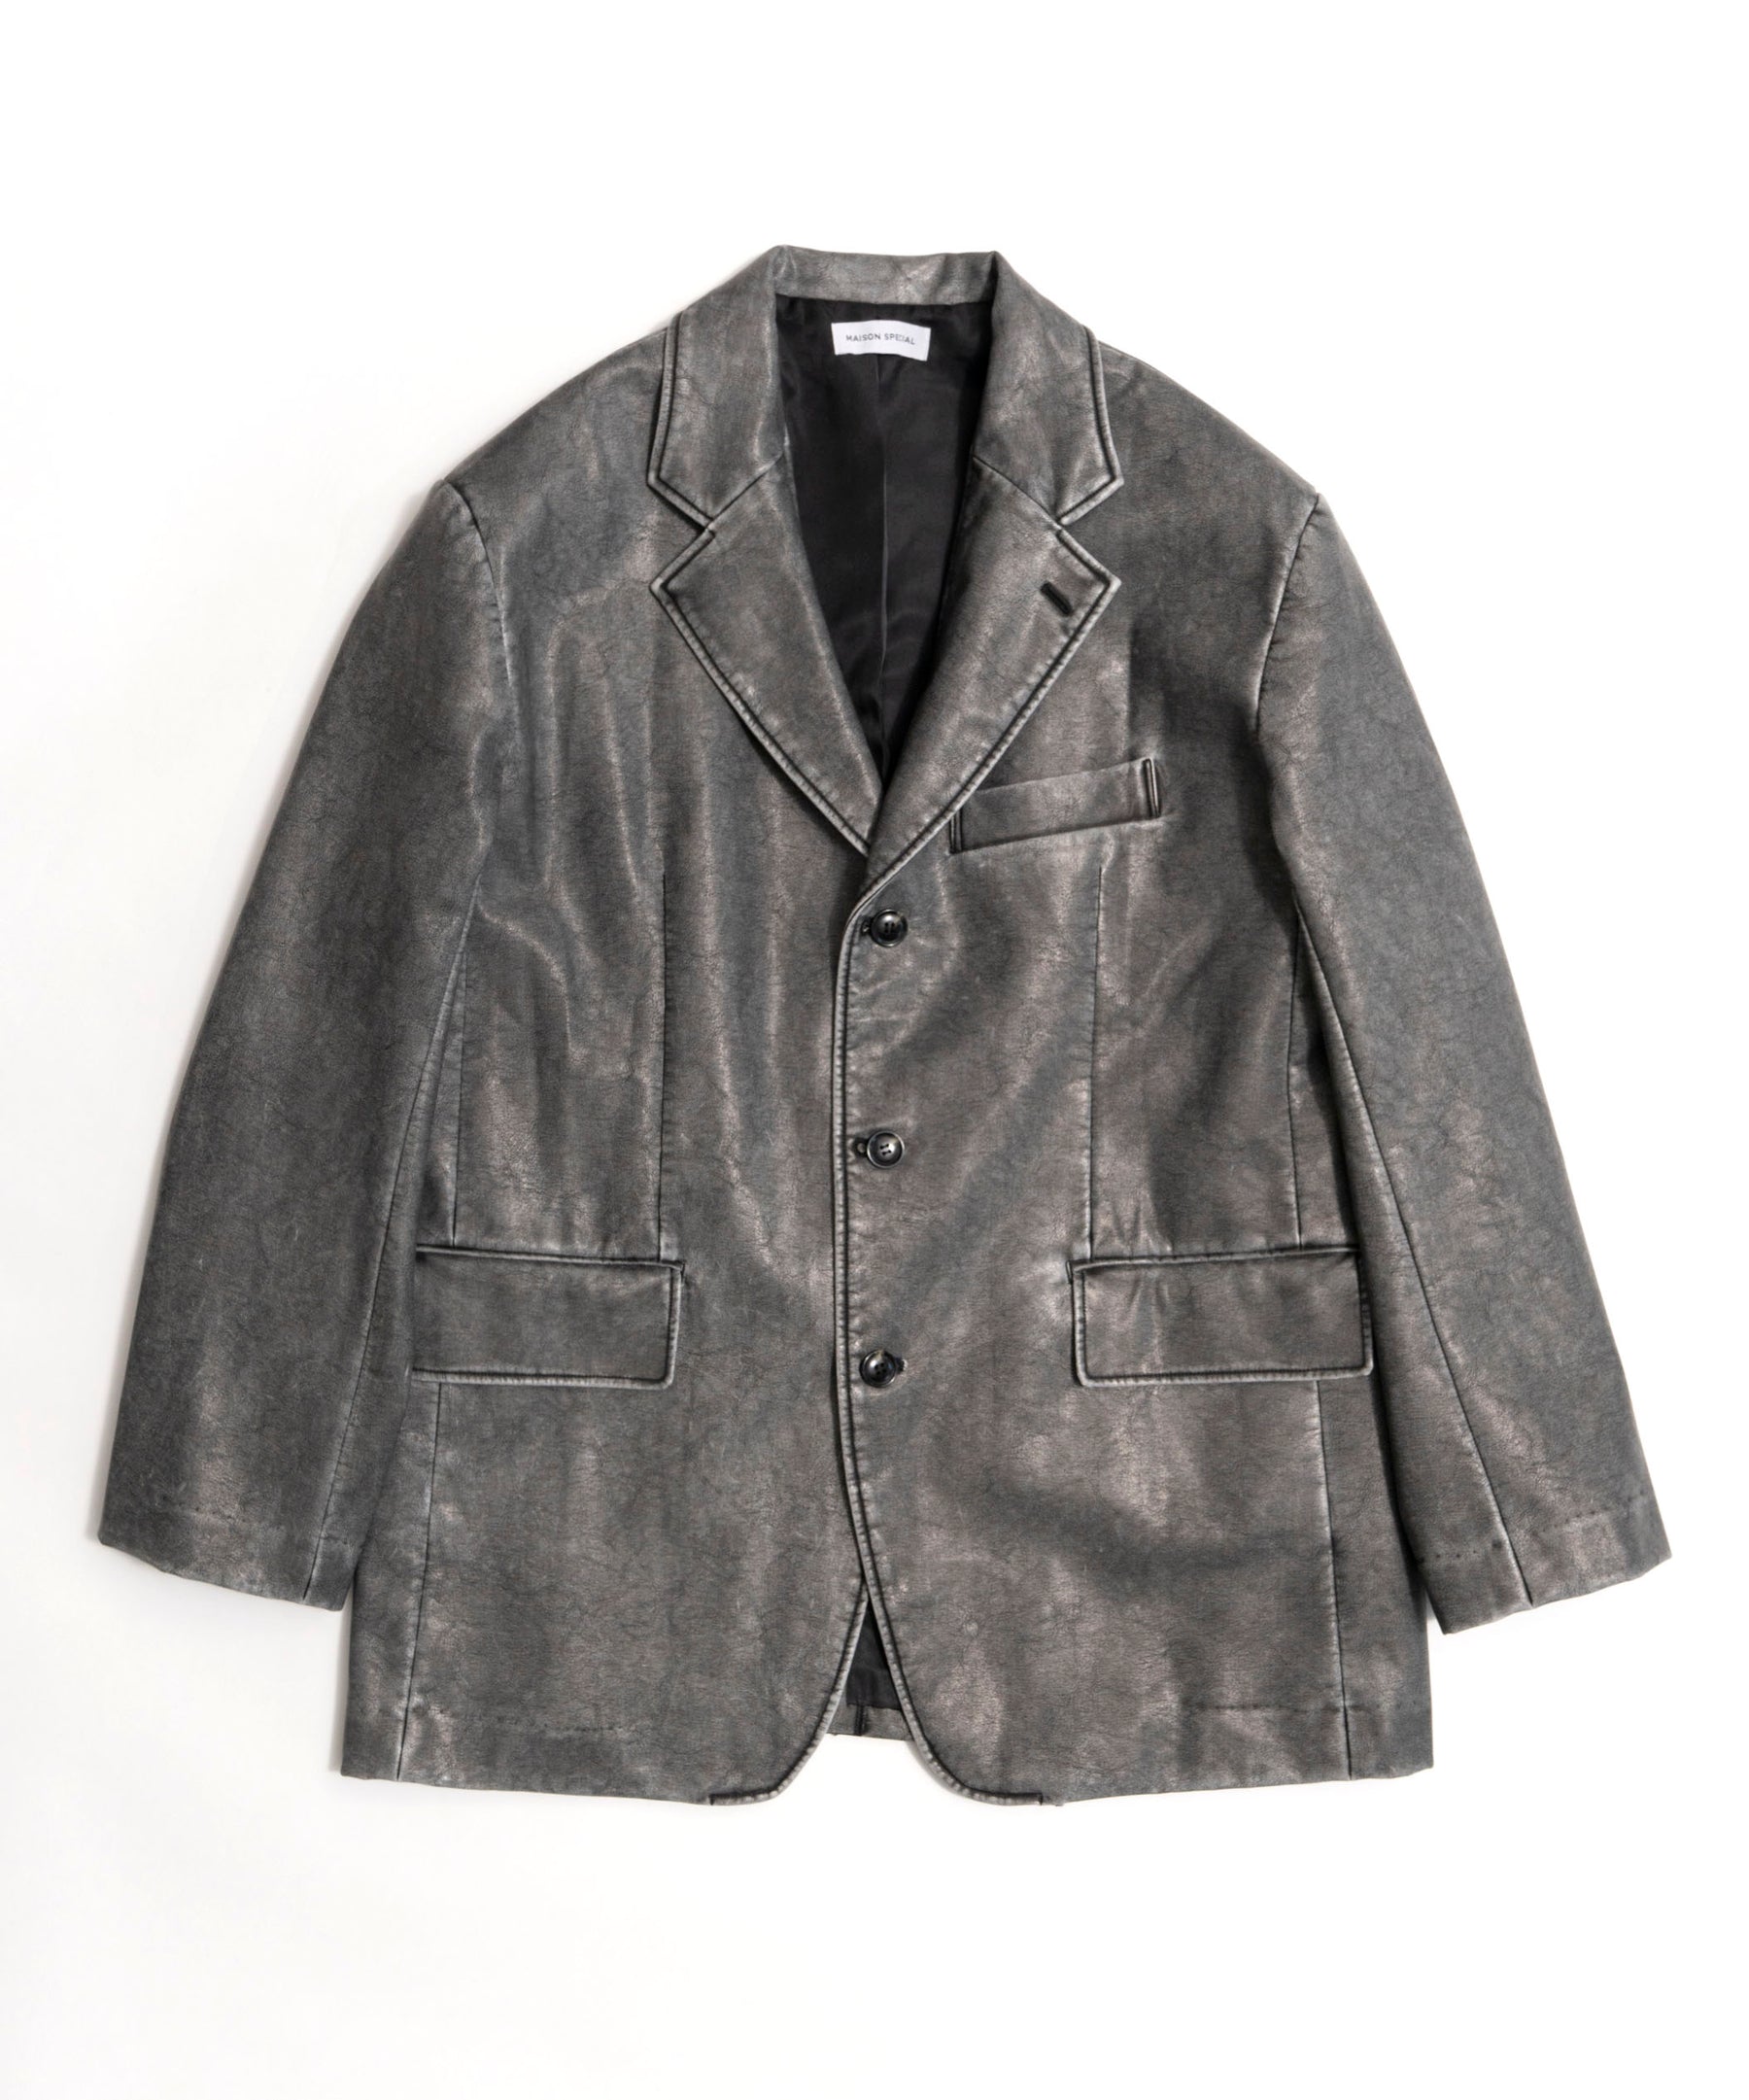 Washed leather Single Jacket